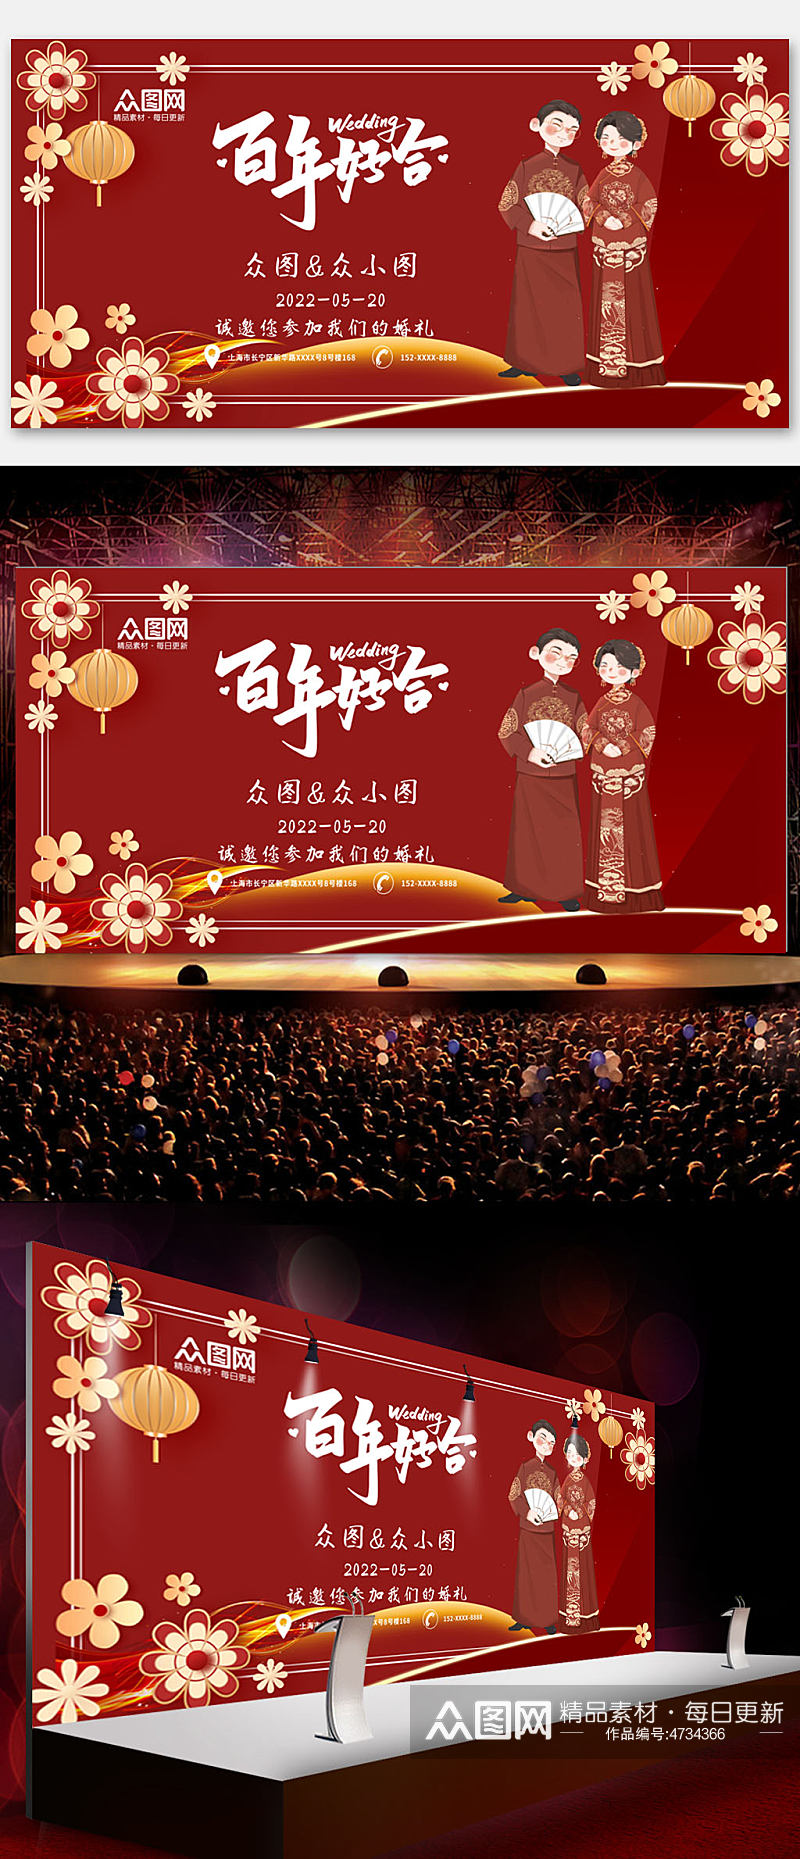 中式红色婚纱婚礼签到处背景展板素材